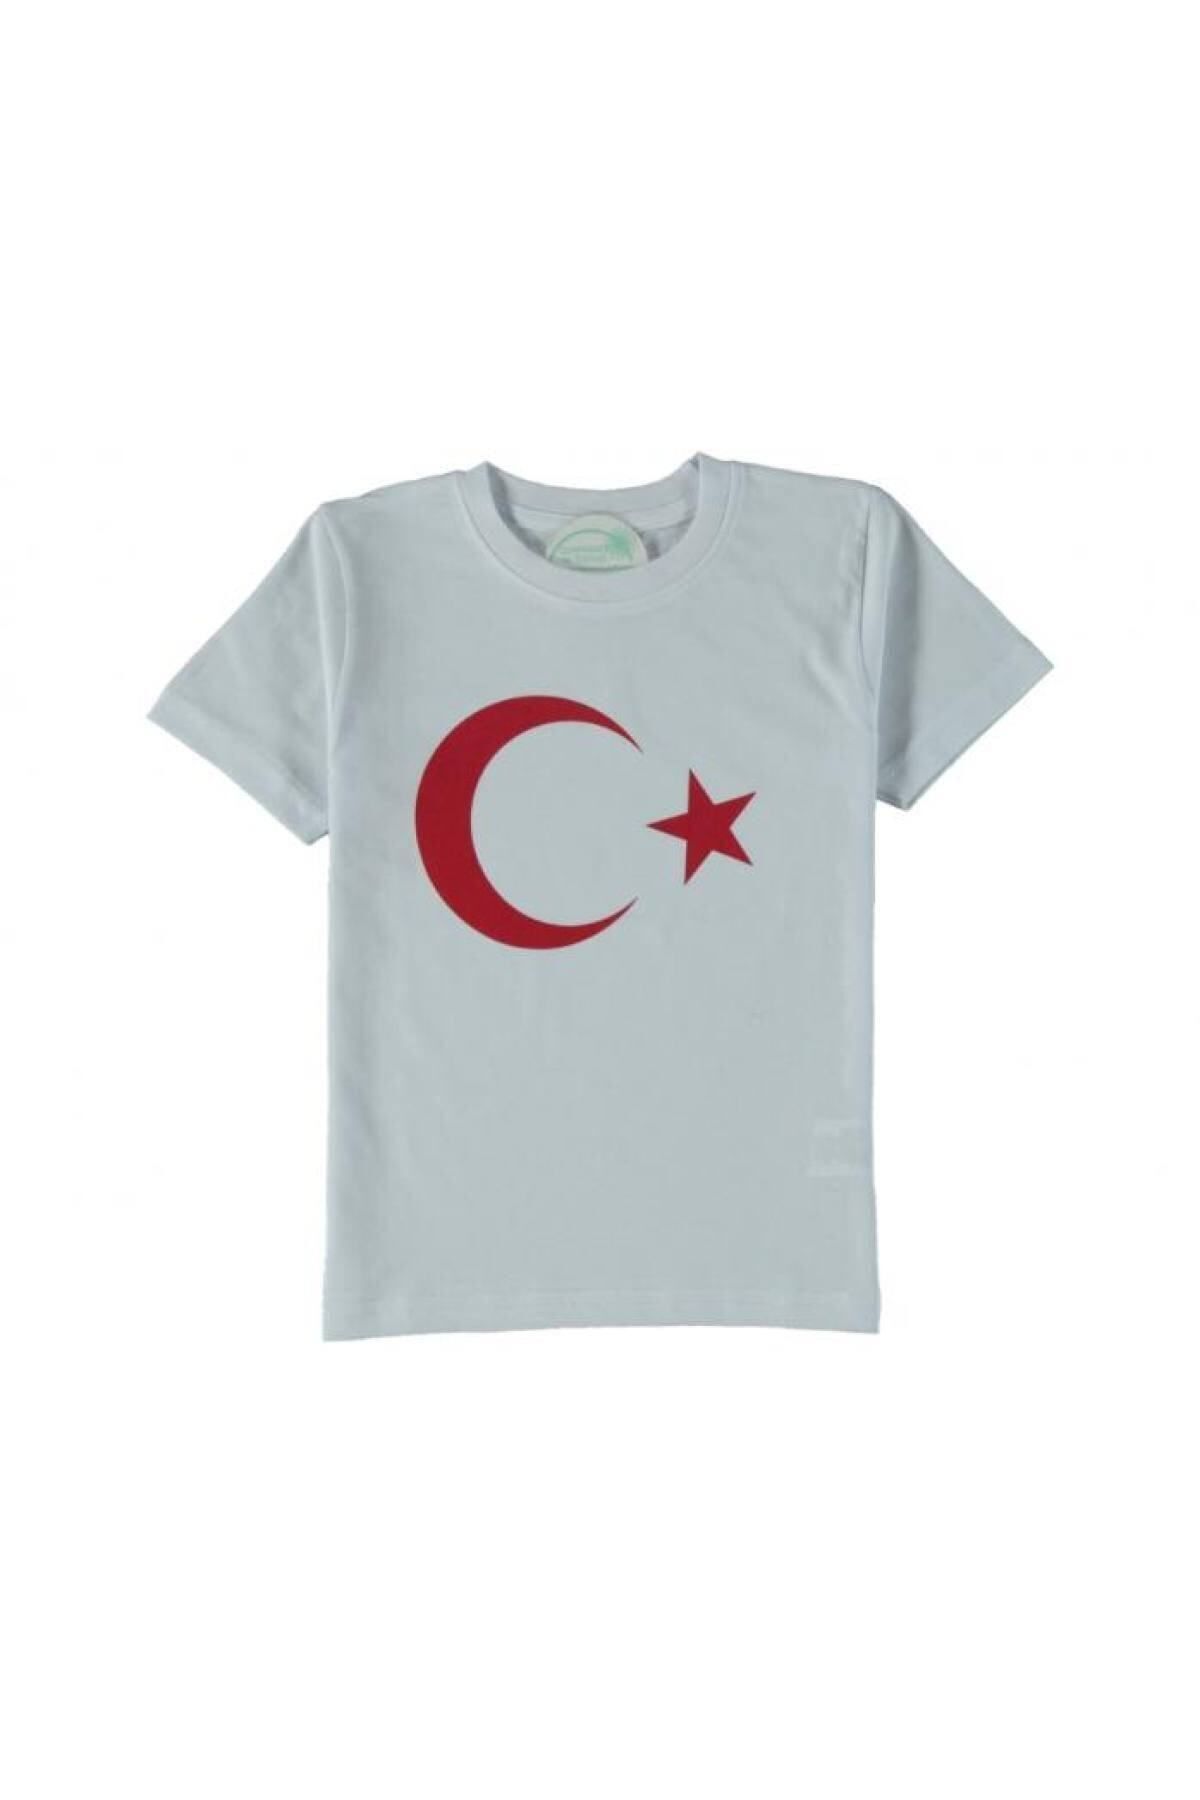 ÇİDEM'S Unisex Çocuk Atatürk Baskılı T-shirt